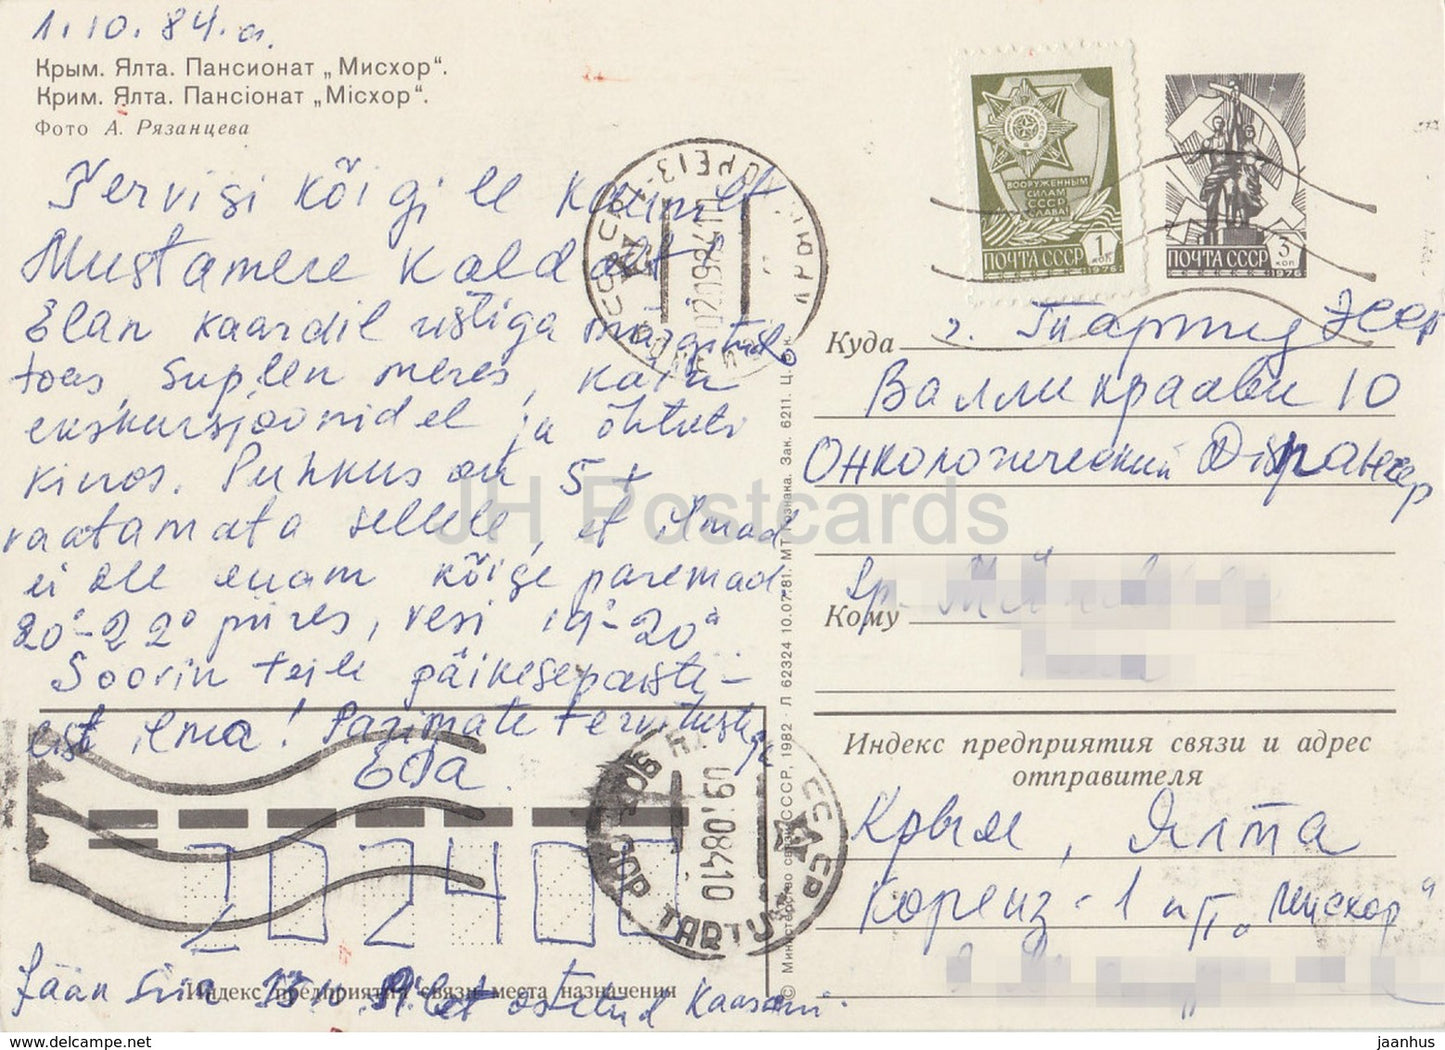 Yalta - maison de retraite Miskhor Mishor - Crimée - entier postal - 1984 - Ukraine URSS - utilisé